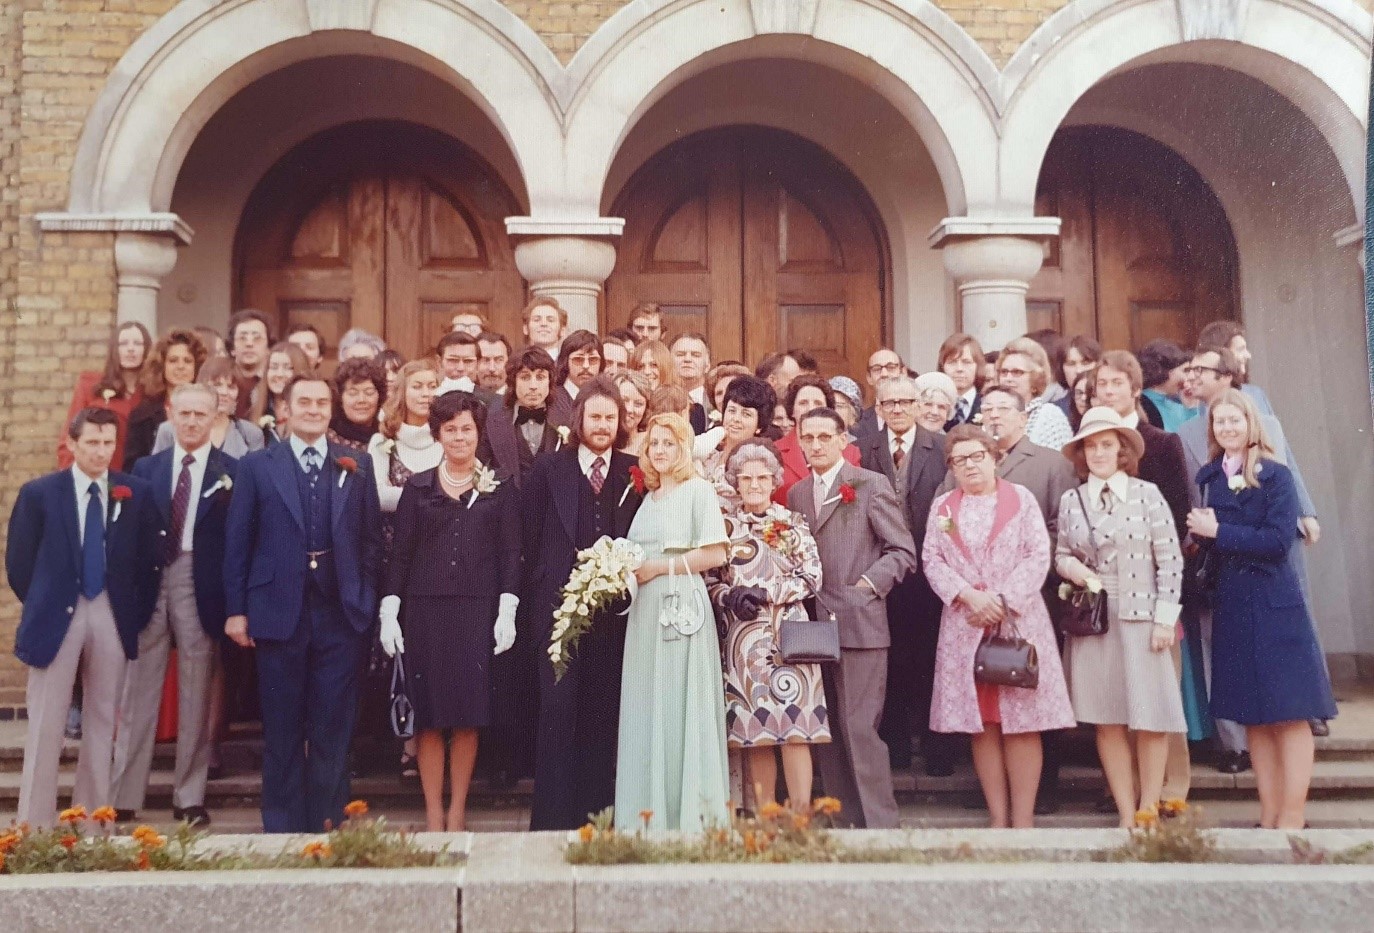 Conald Marlow's wedding to Margaret Donovan in 1974